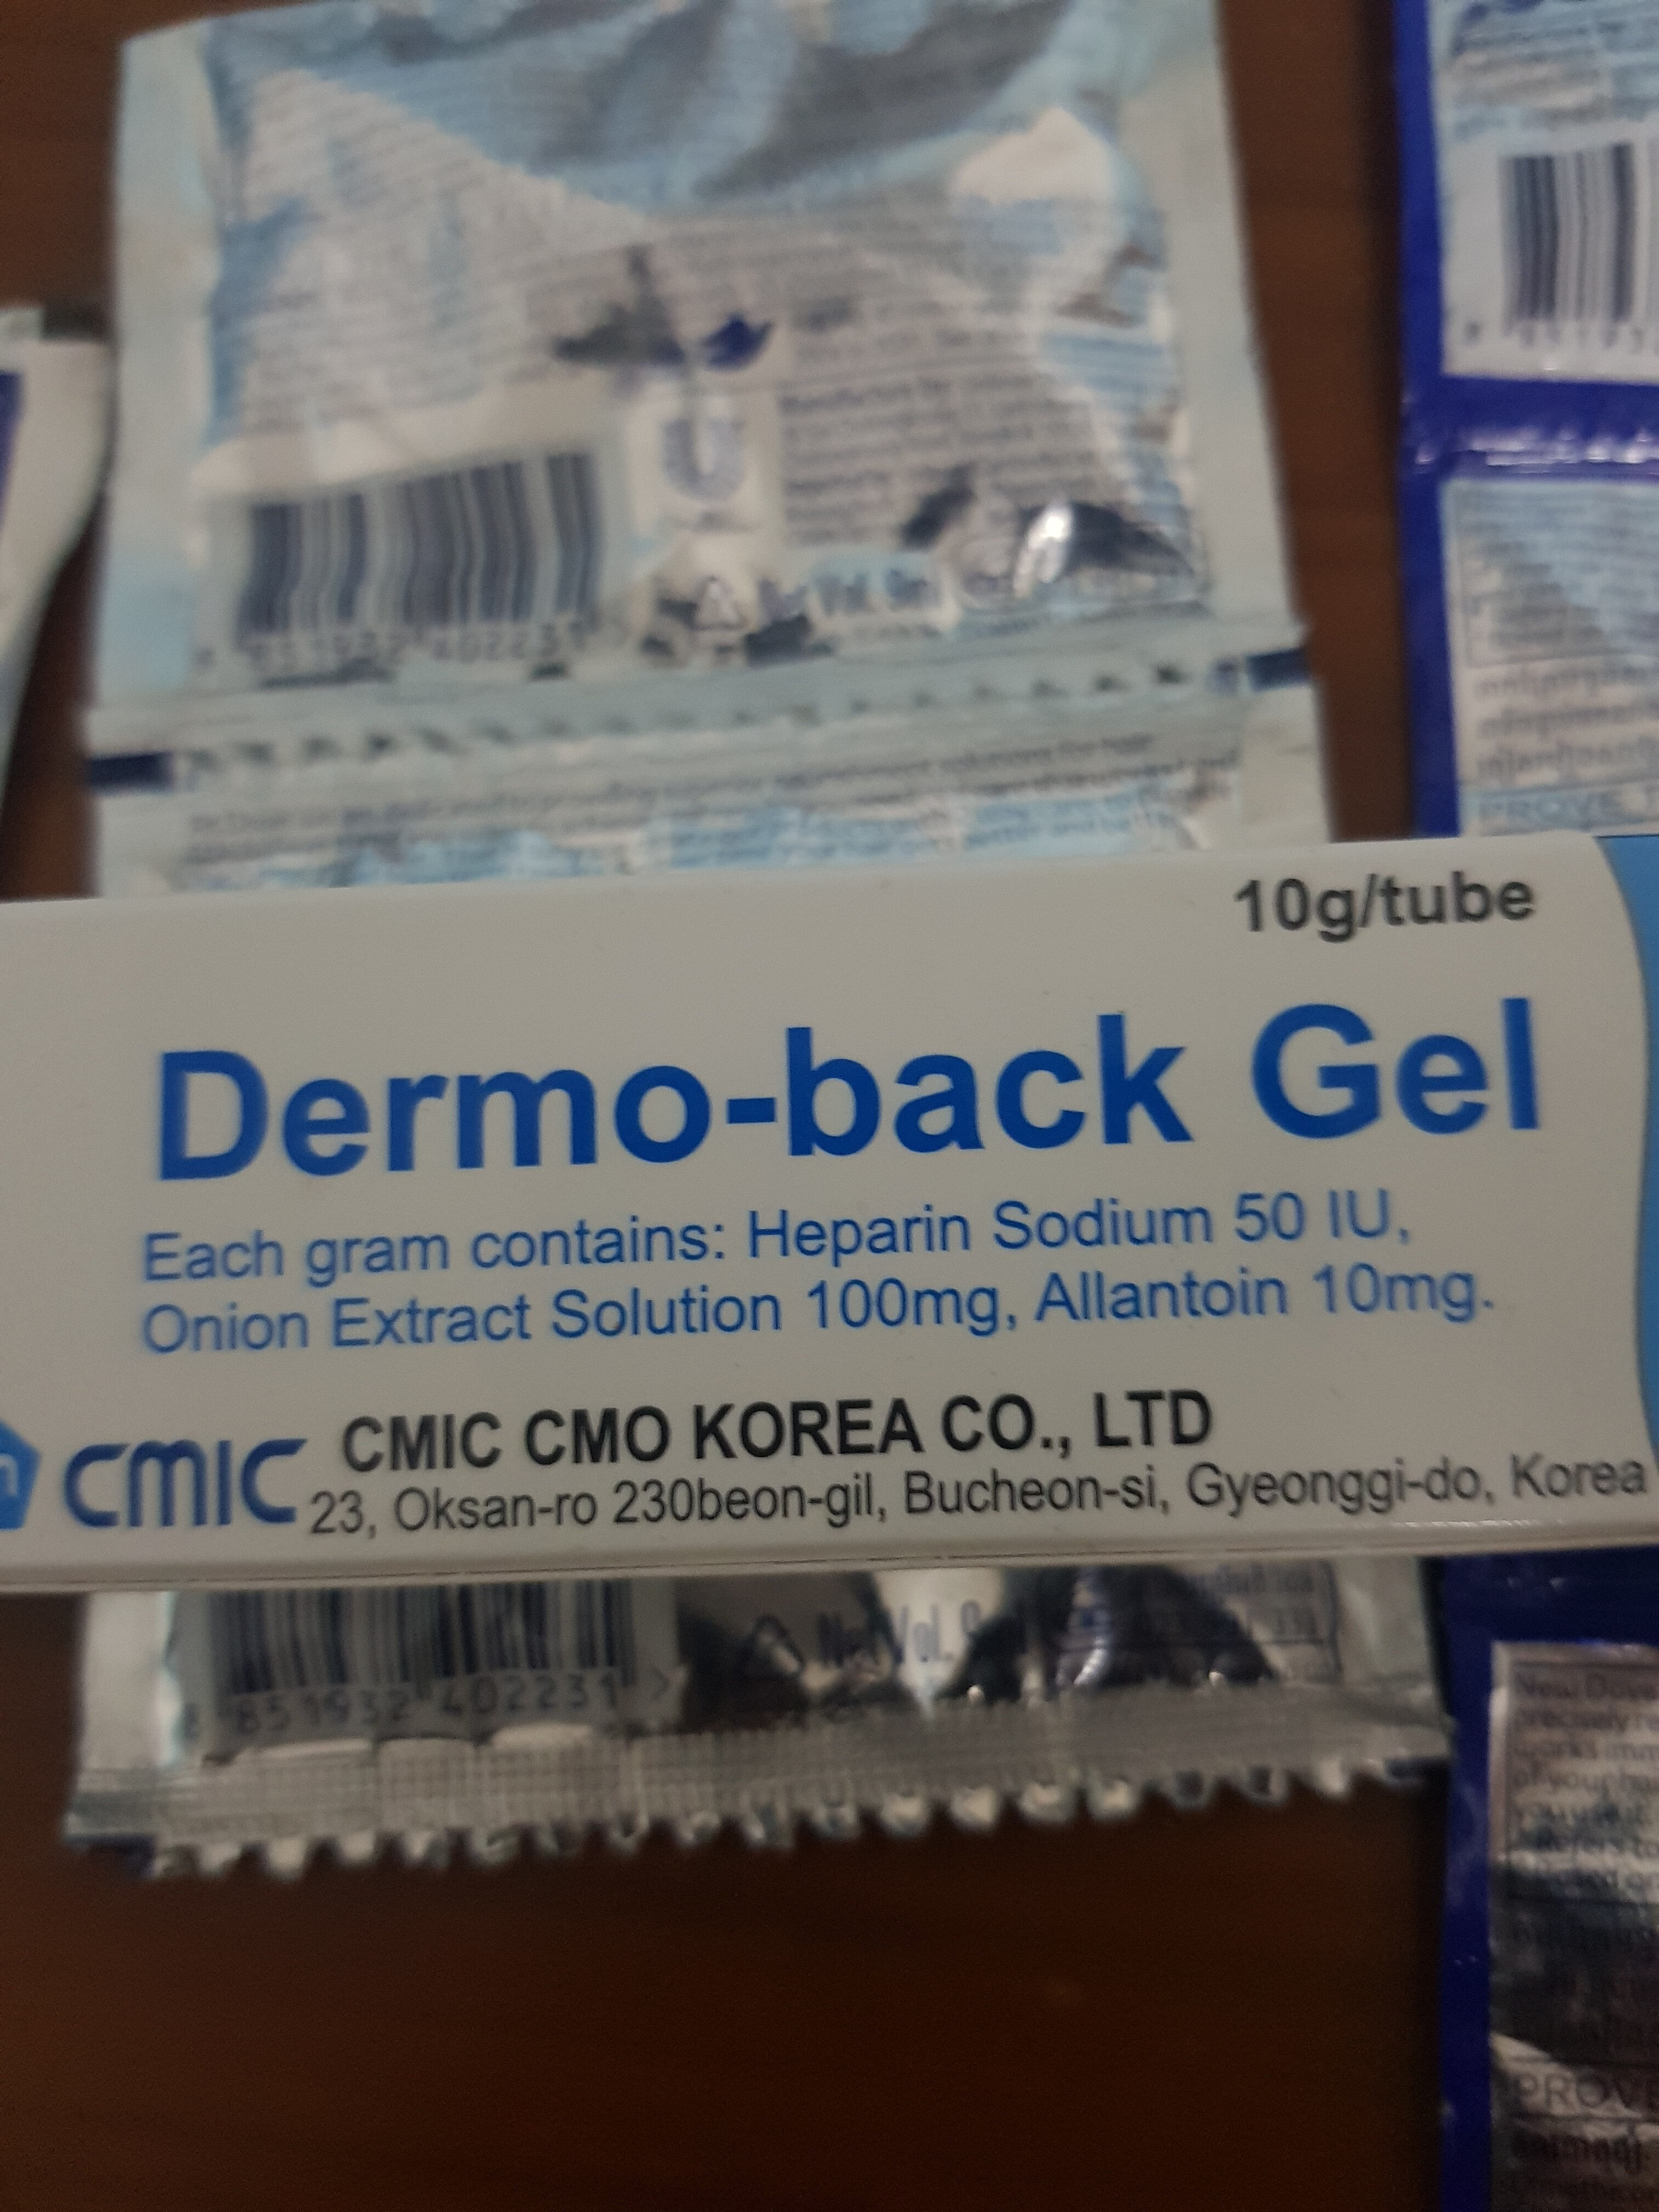 dermo-back gel - Продукт - en